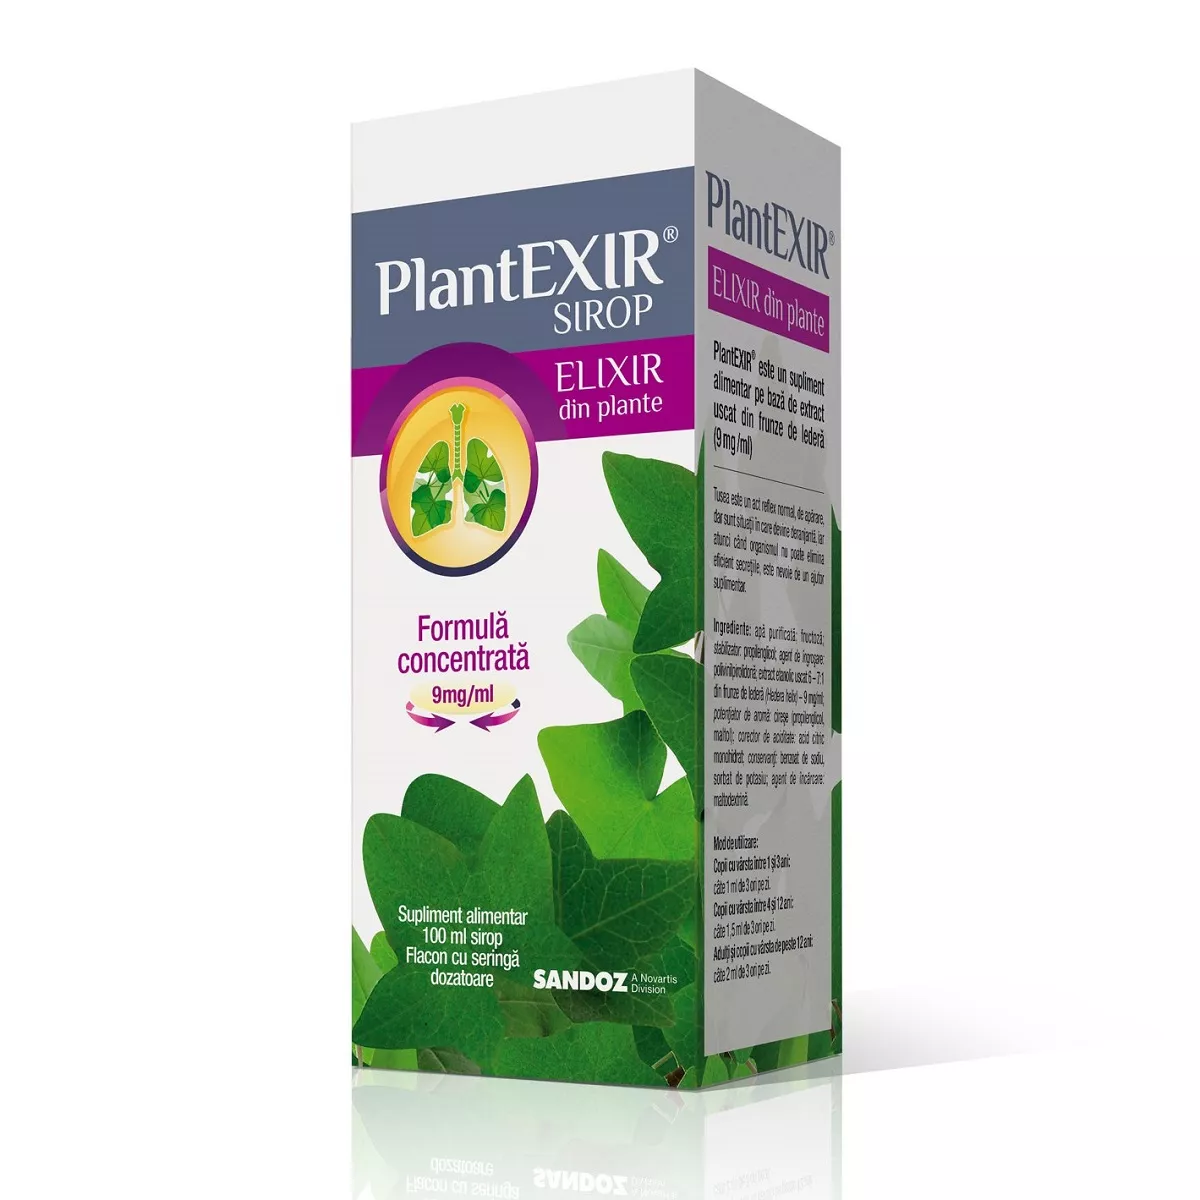 Plantexir Sirop x 100ml, [],remediumfarm.ro